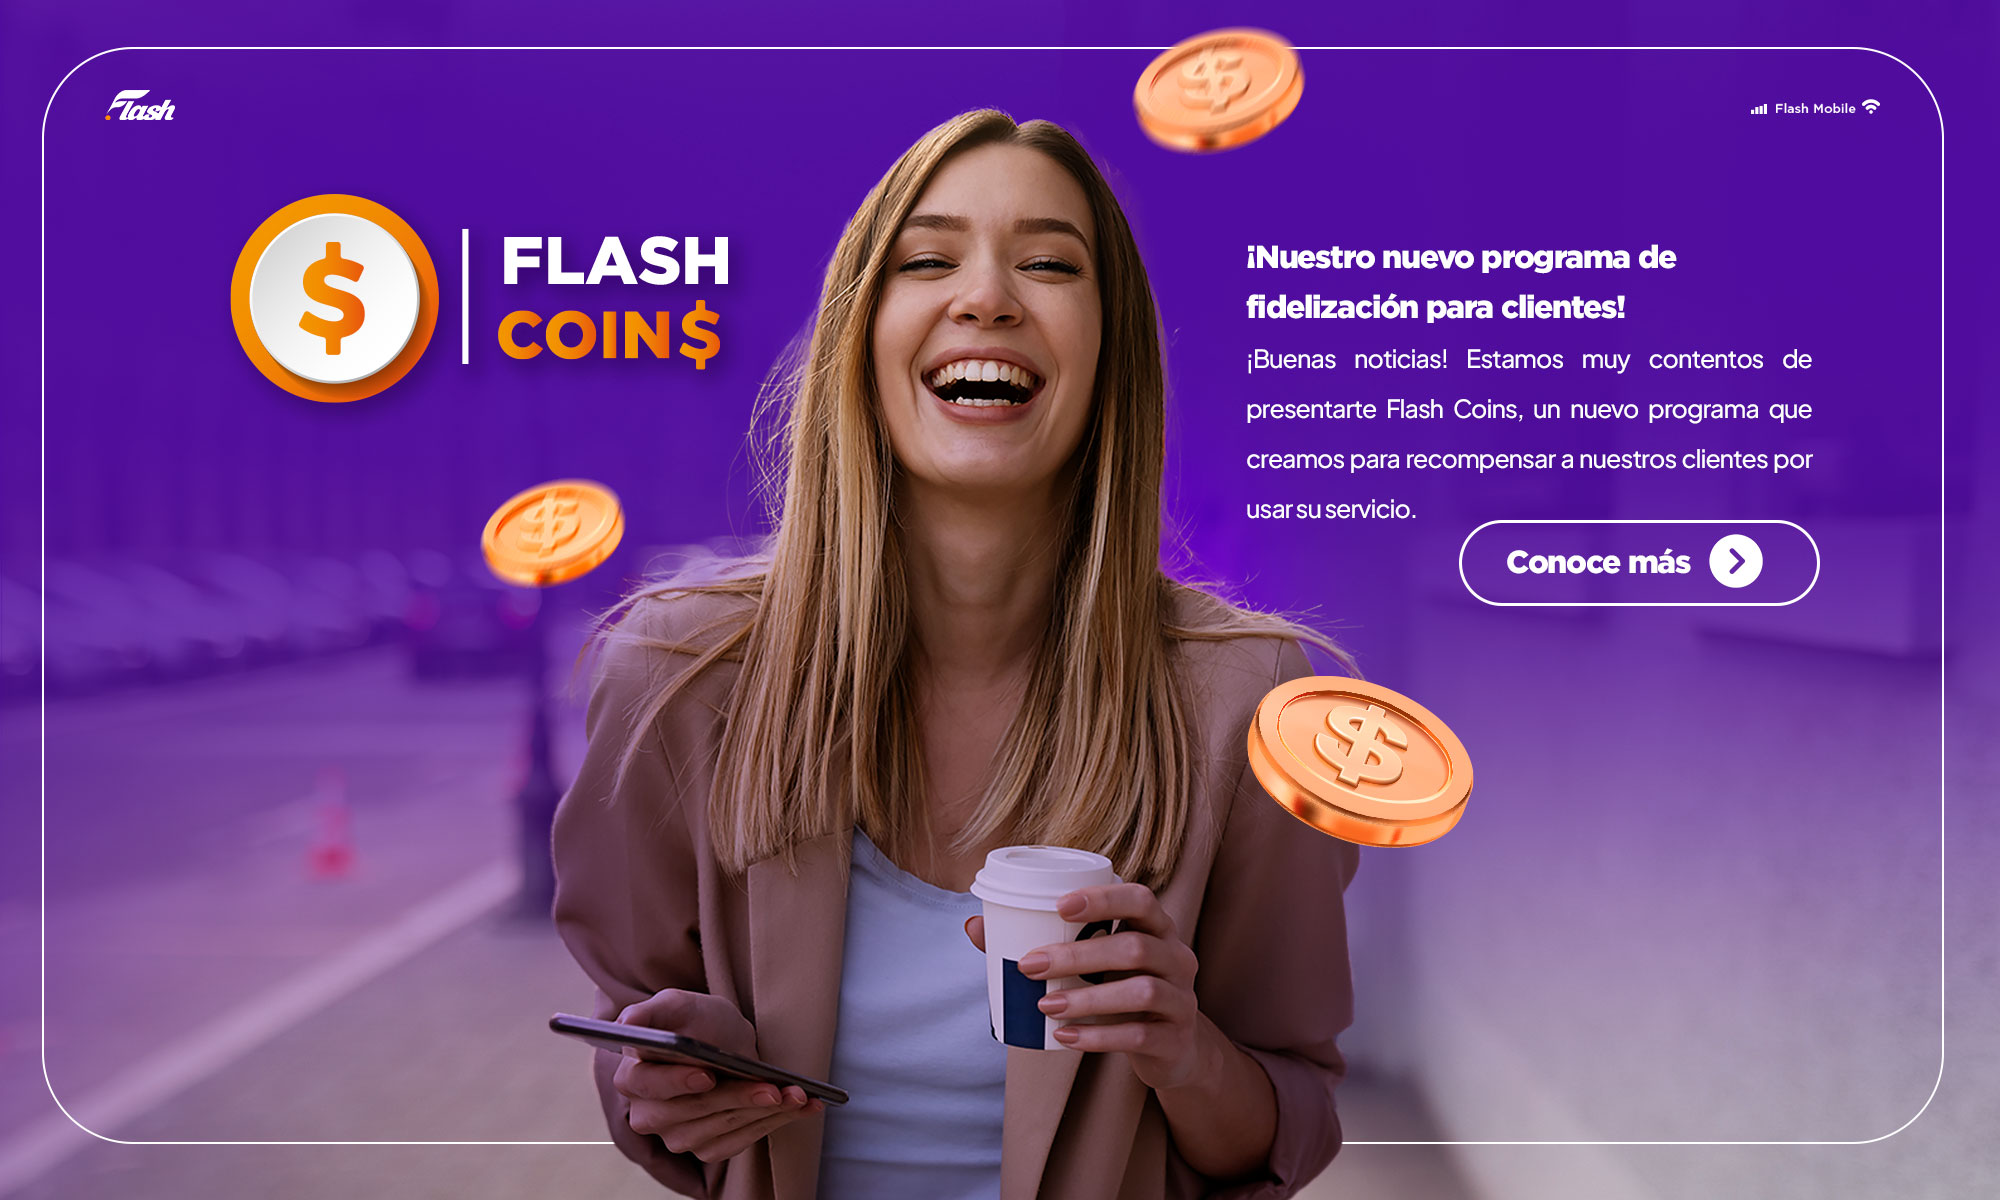 Te recompensamos por ser Flash con las nuevas Flash Coins. Consulta más información aquí